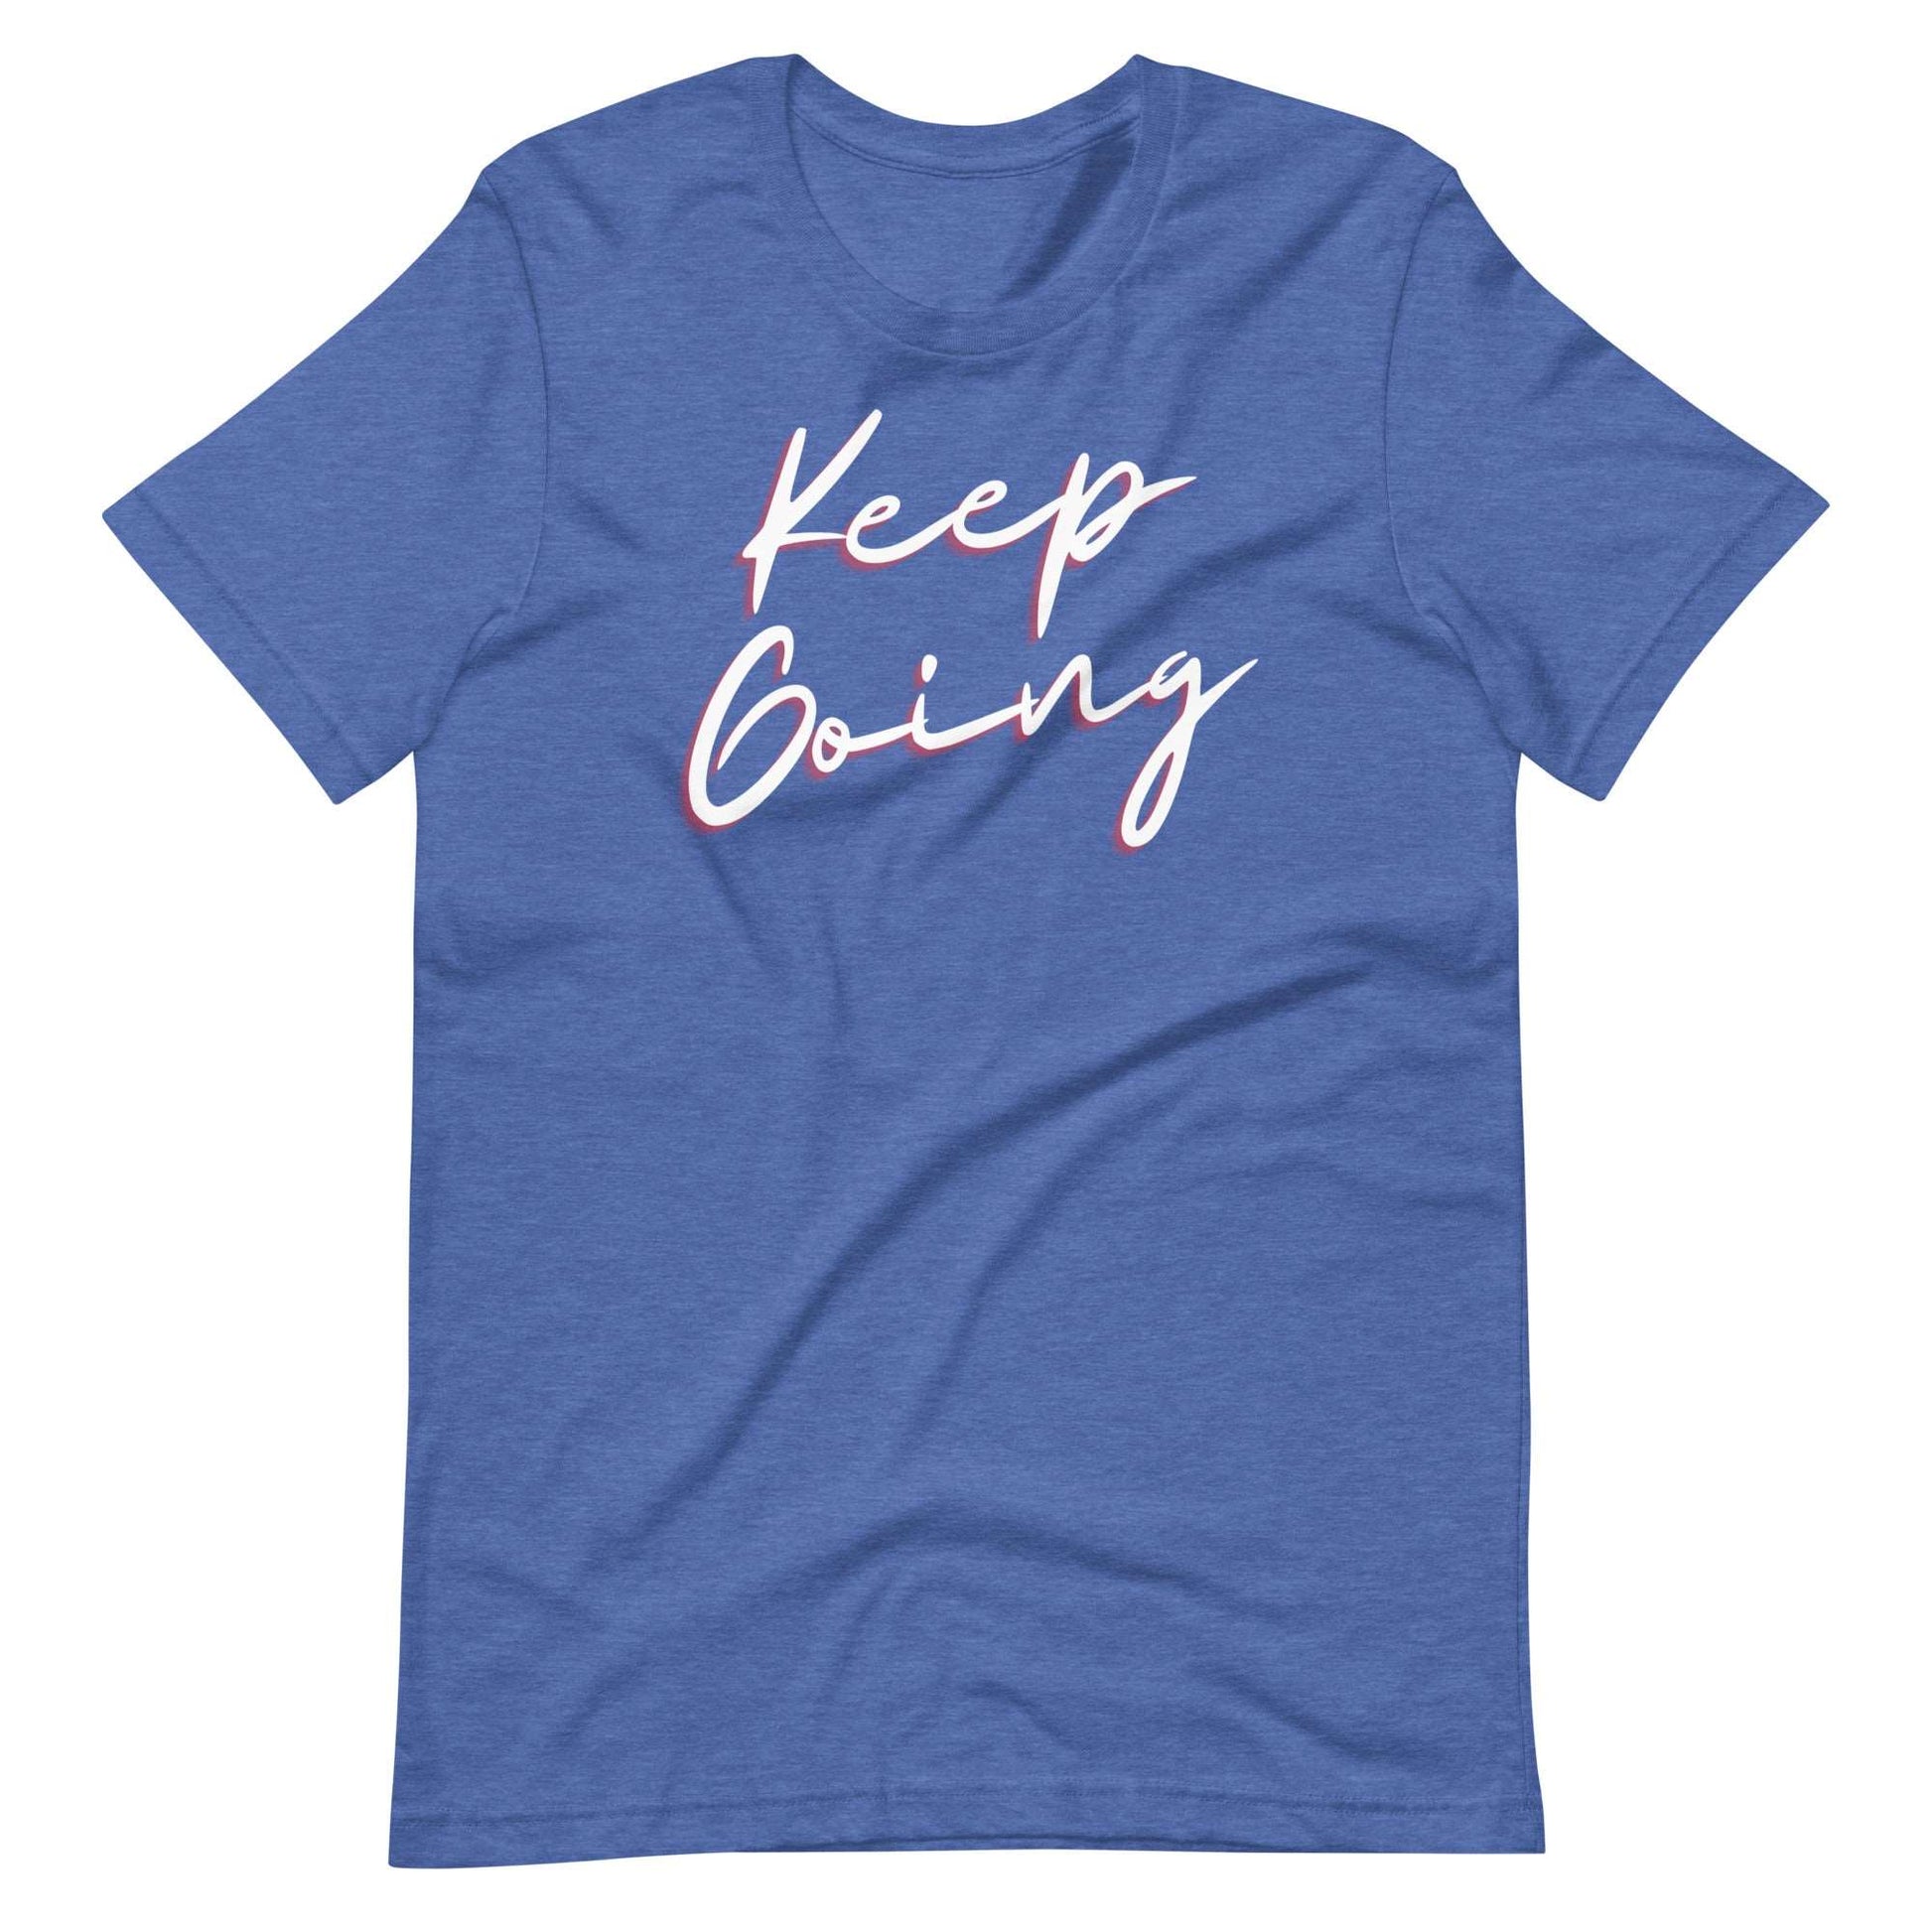 Keep Going! T-Shirt